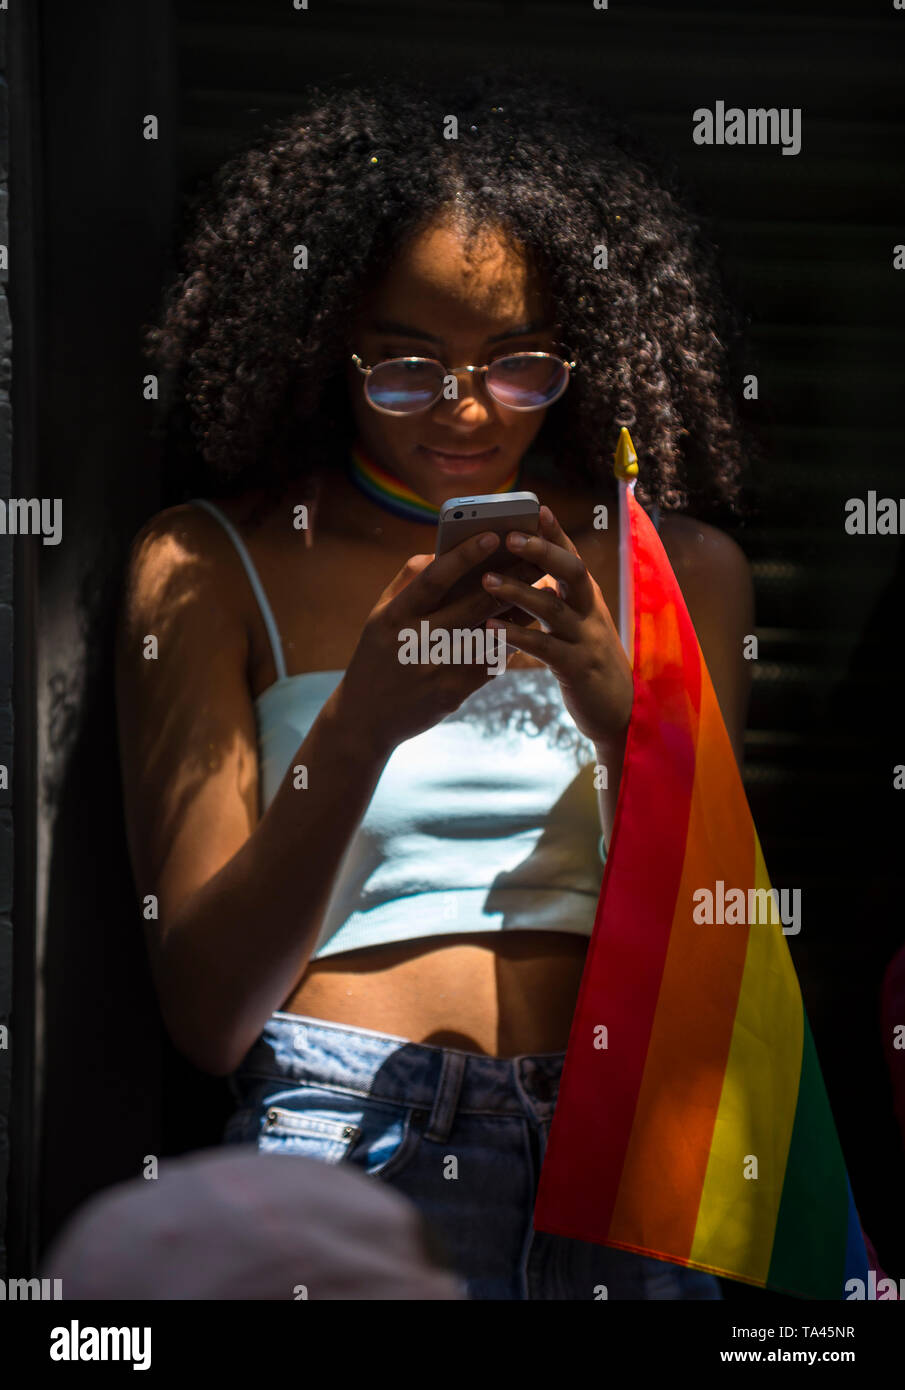 NEW YORK - 25 juin 2017 : Supporter avec le drapeau arc-en-ciel consulte ses médias sociaux sur son téléphone dans la Gay Pride Parade annuelle. Banque D'Images